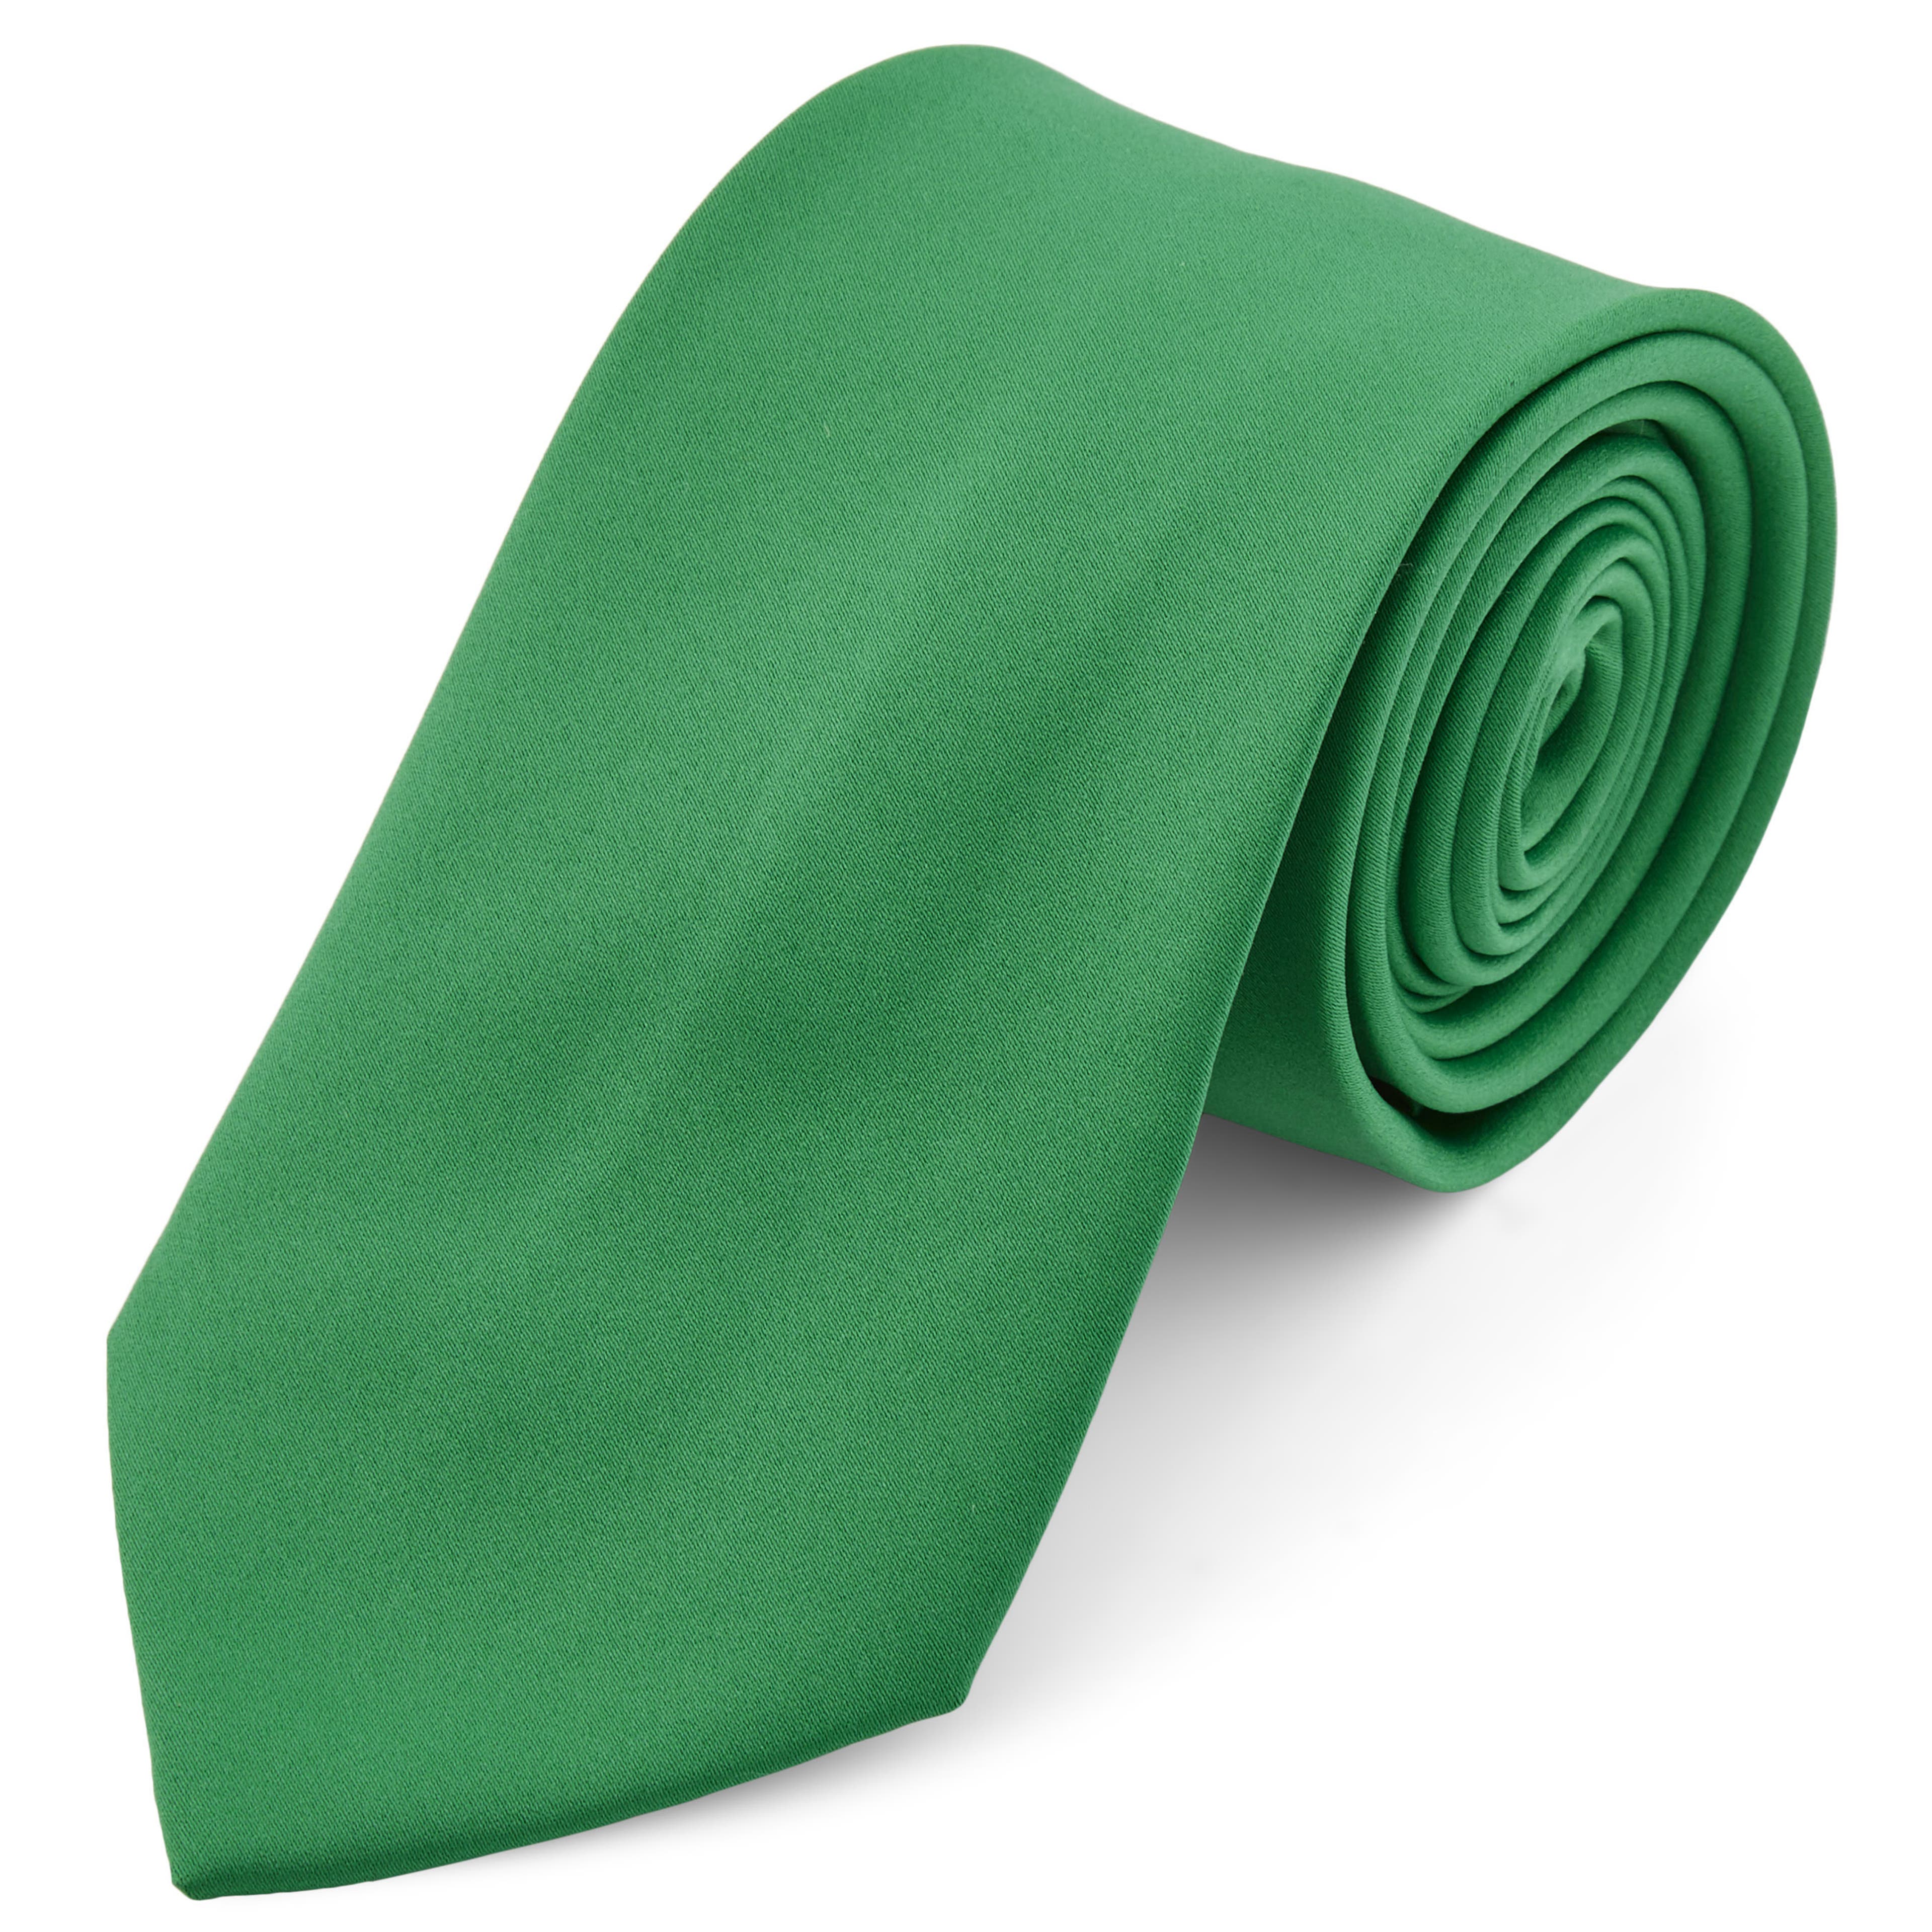 Corbata básica verde esmeralda 8 cm